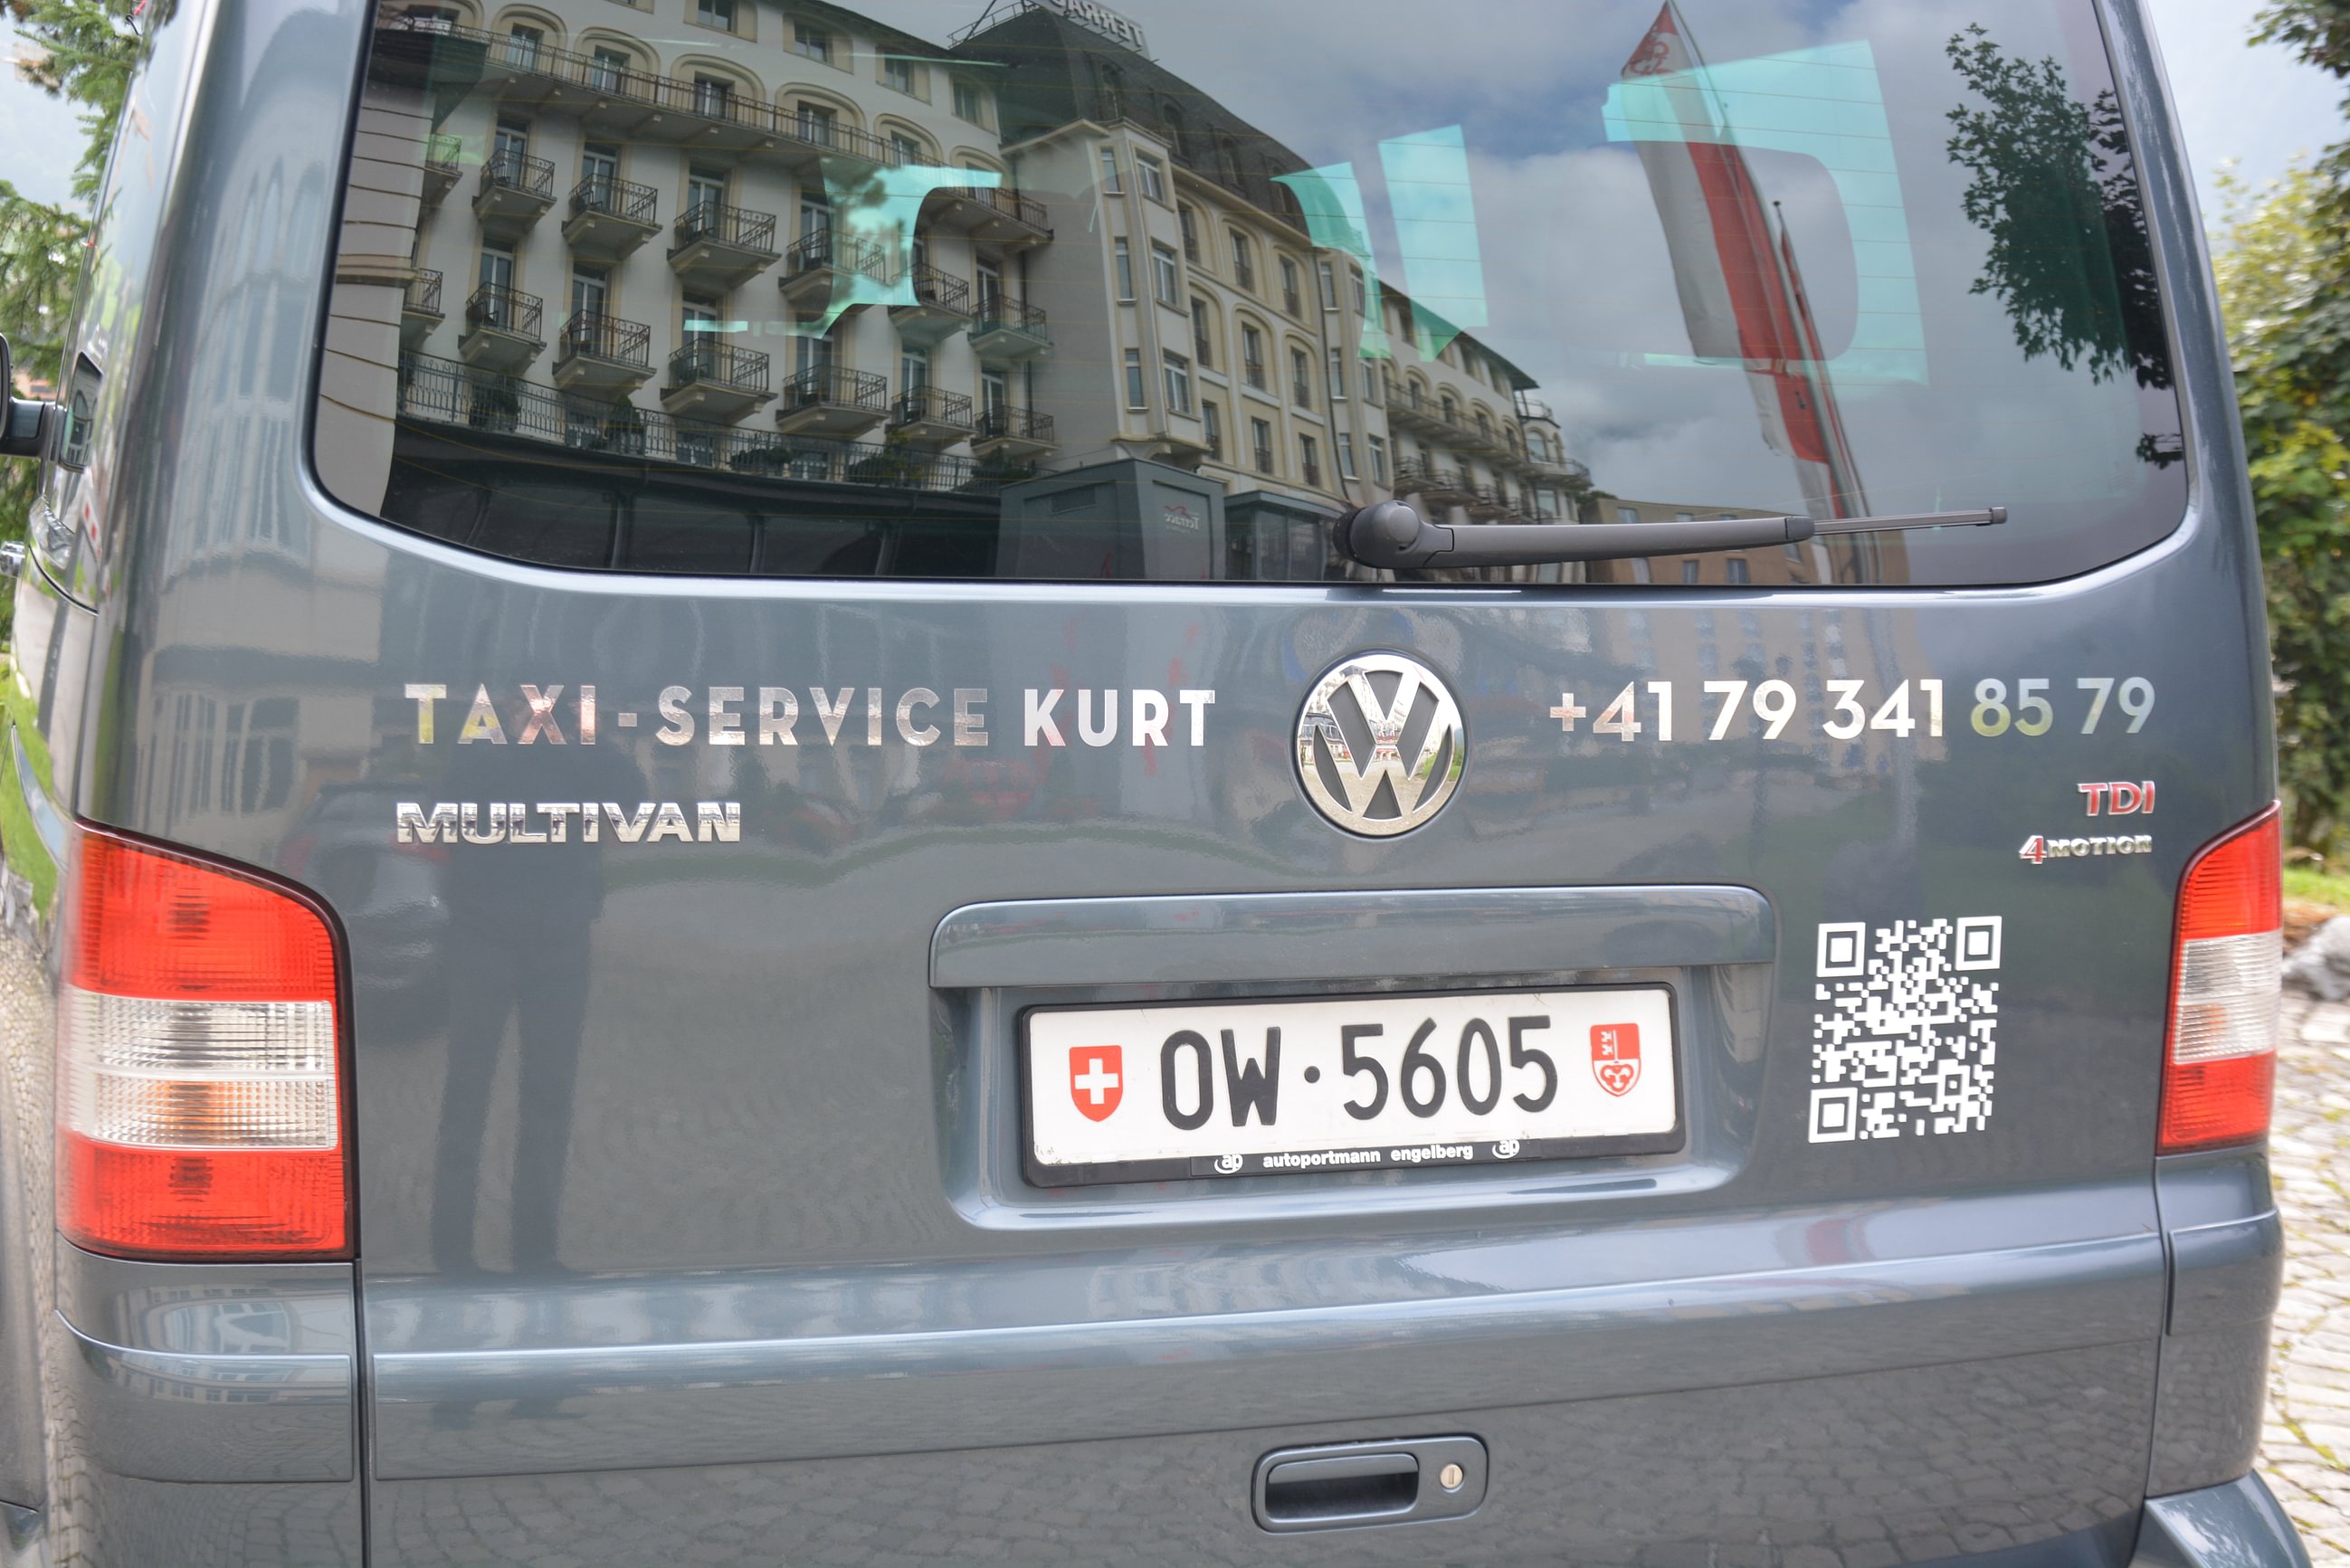 Bilder Taxiservice-Kurt.ch